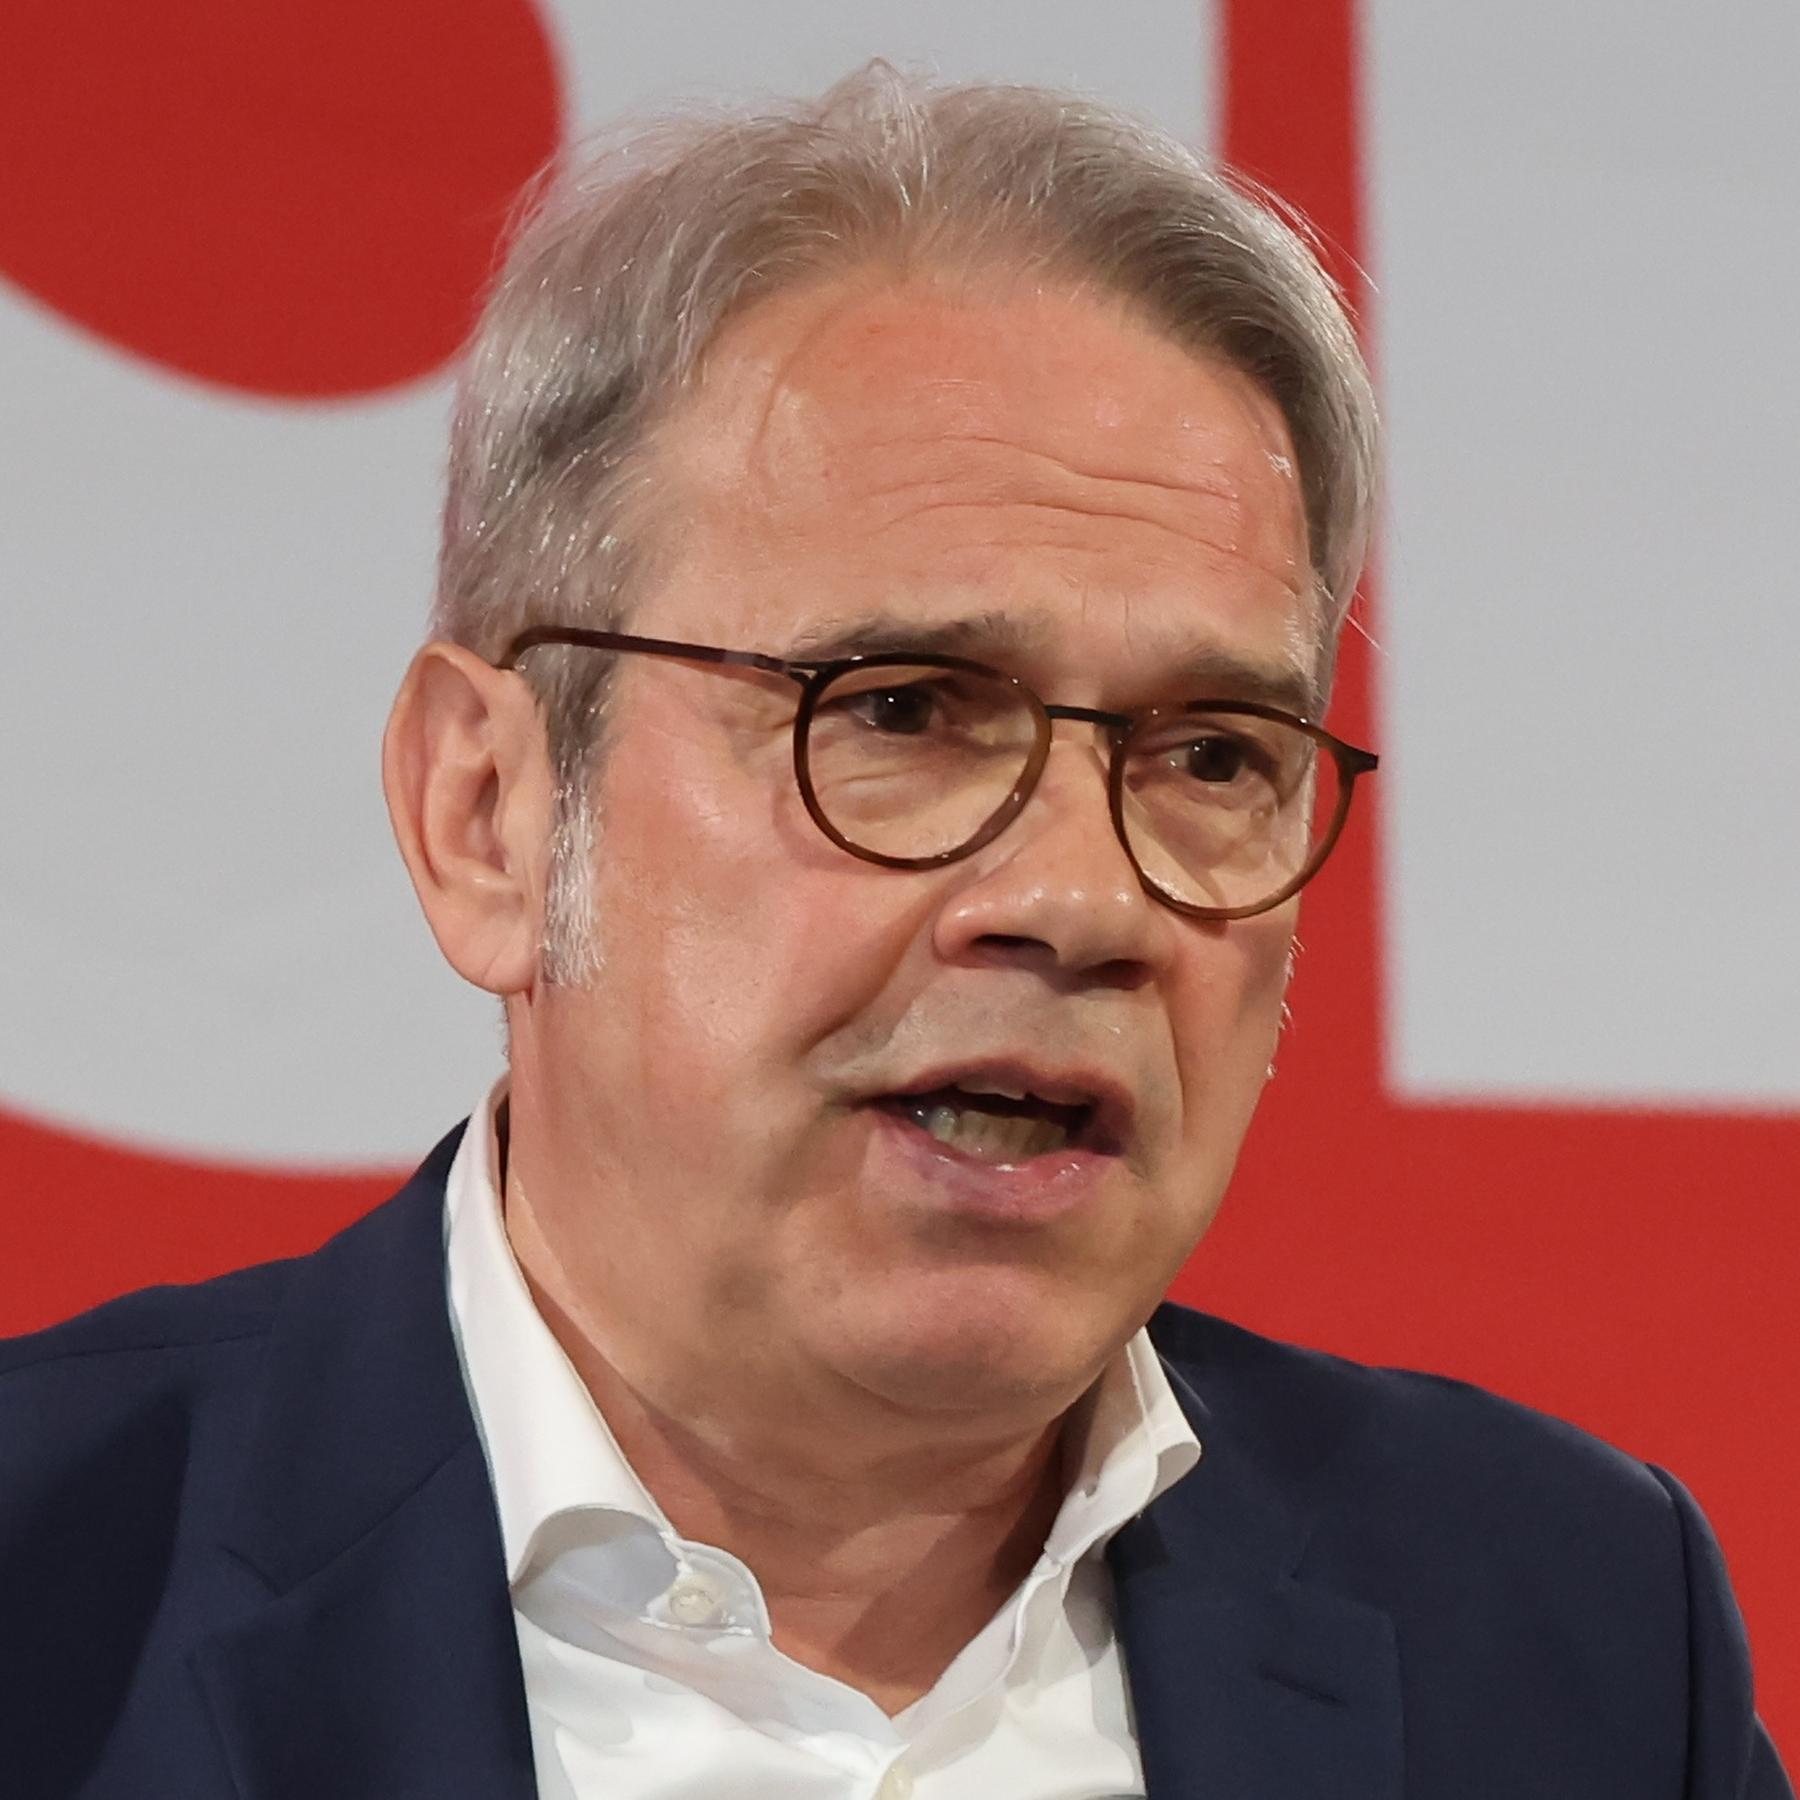 Thüringens Innenminister Georg Maier: ”Wir werden den Schutz verstärken”